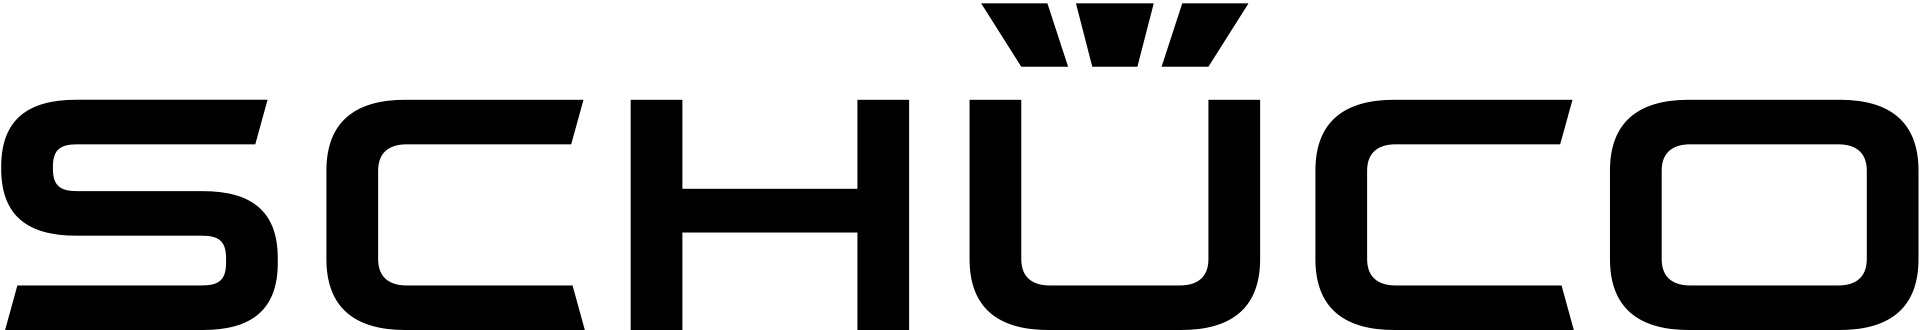 schueco-logo-white-svg-data